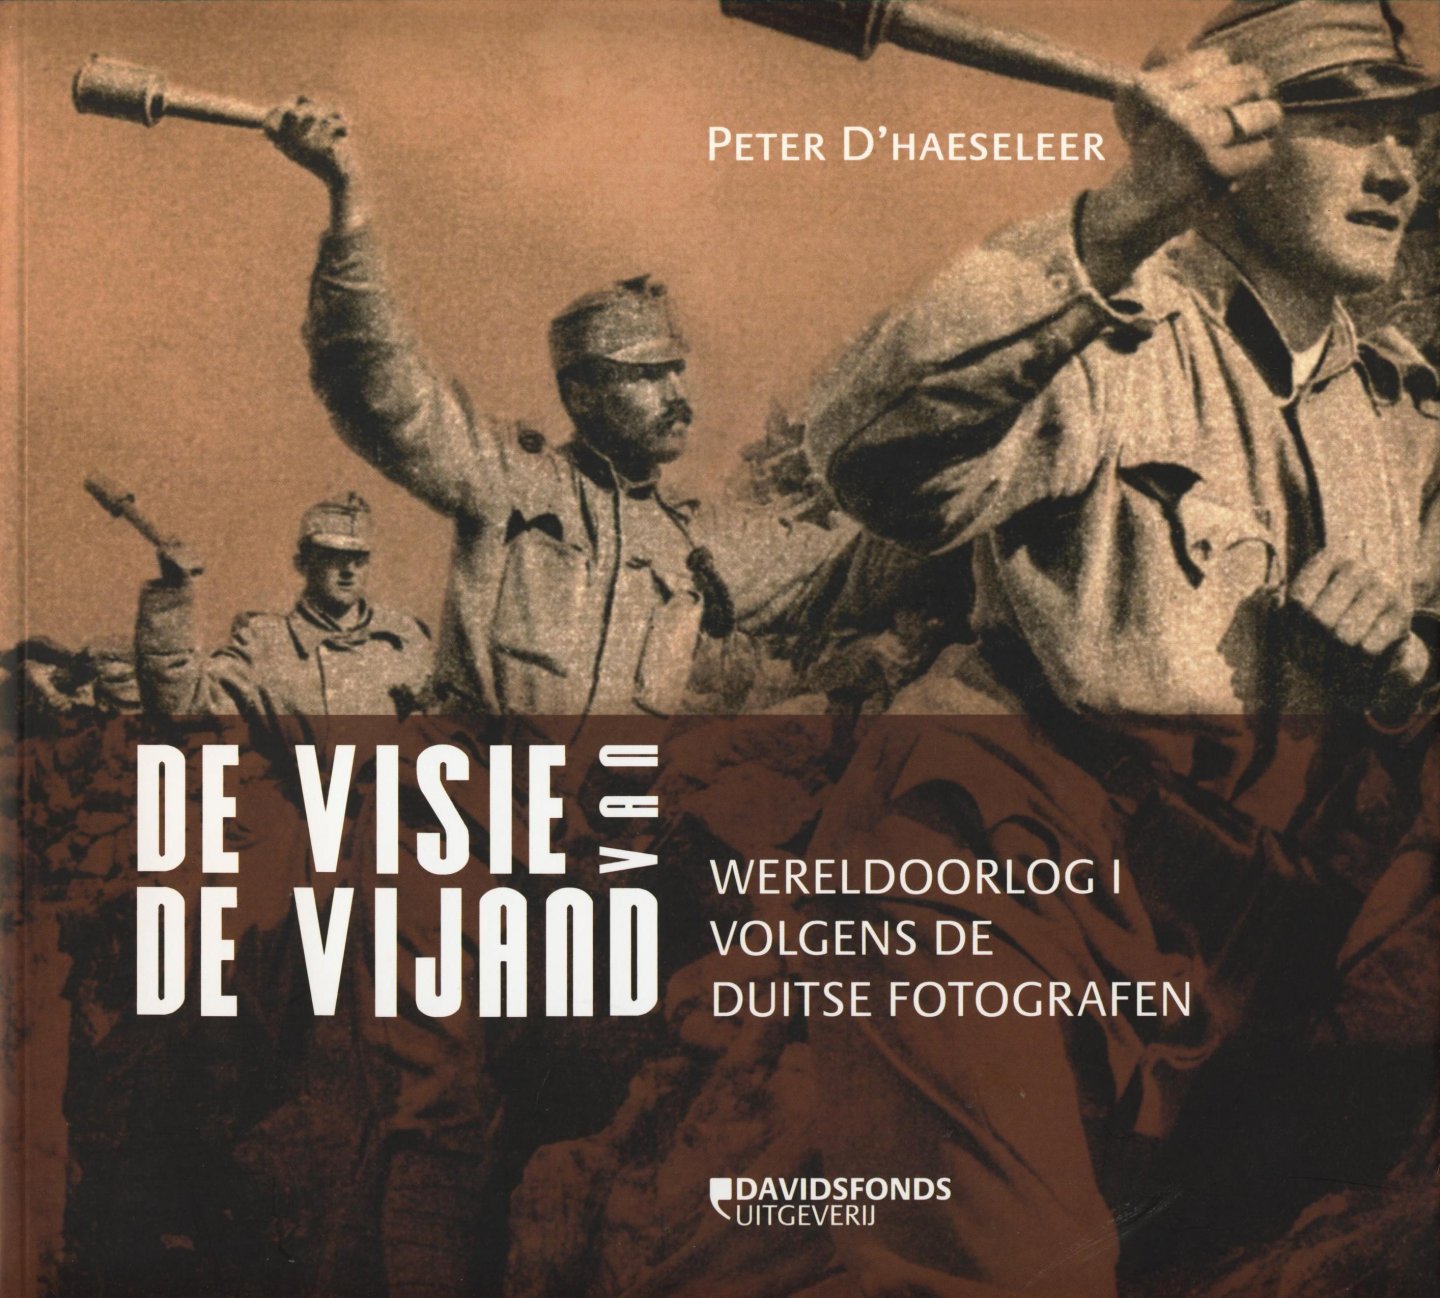 D'Haeseleer, Peter - De visie van de vijand. Wereloorlog 1 volgens de Duitse fotografen